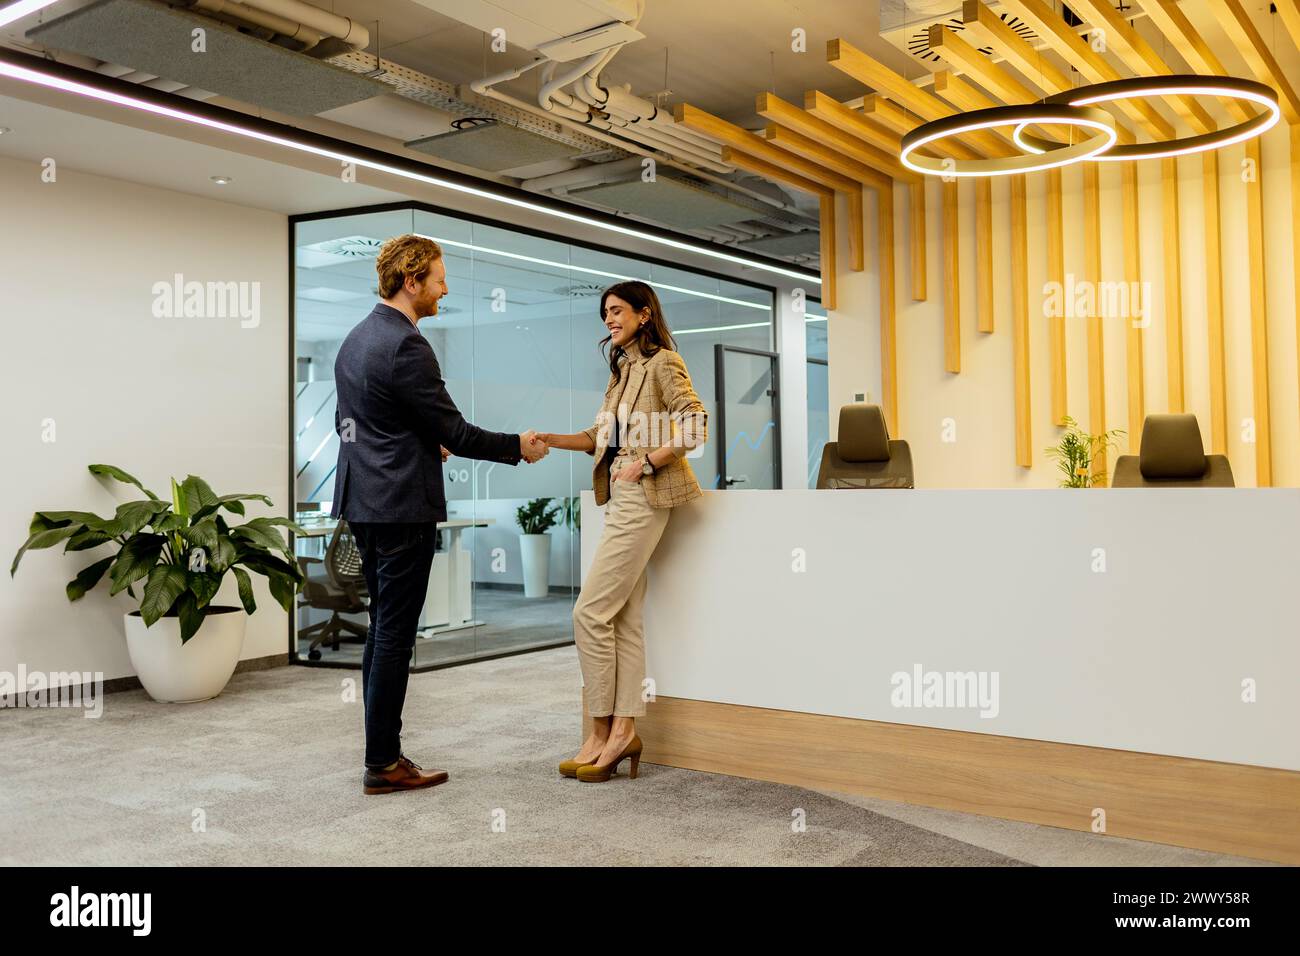 Deux professionnels échangeant des salutations avec une poignée de main amicale dans un environnement de bureau élégant Banque D'Images